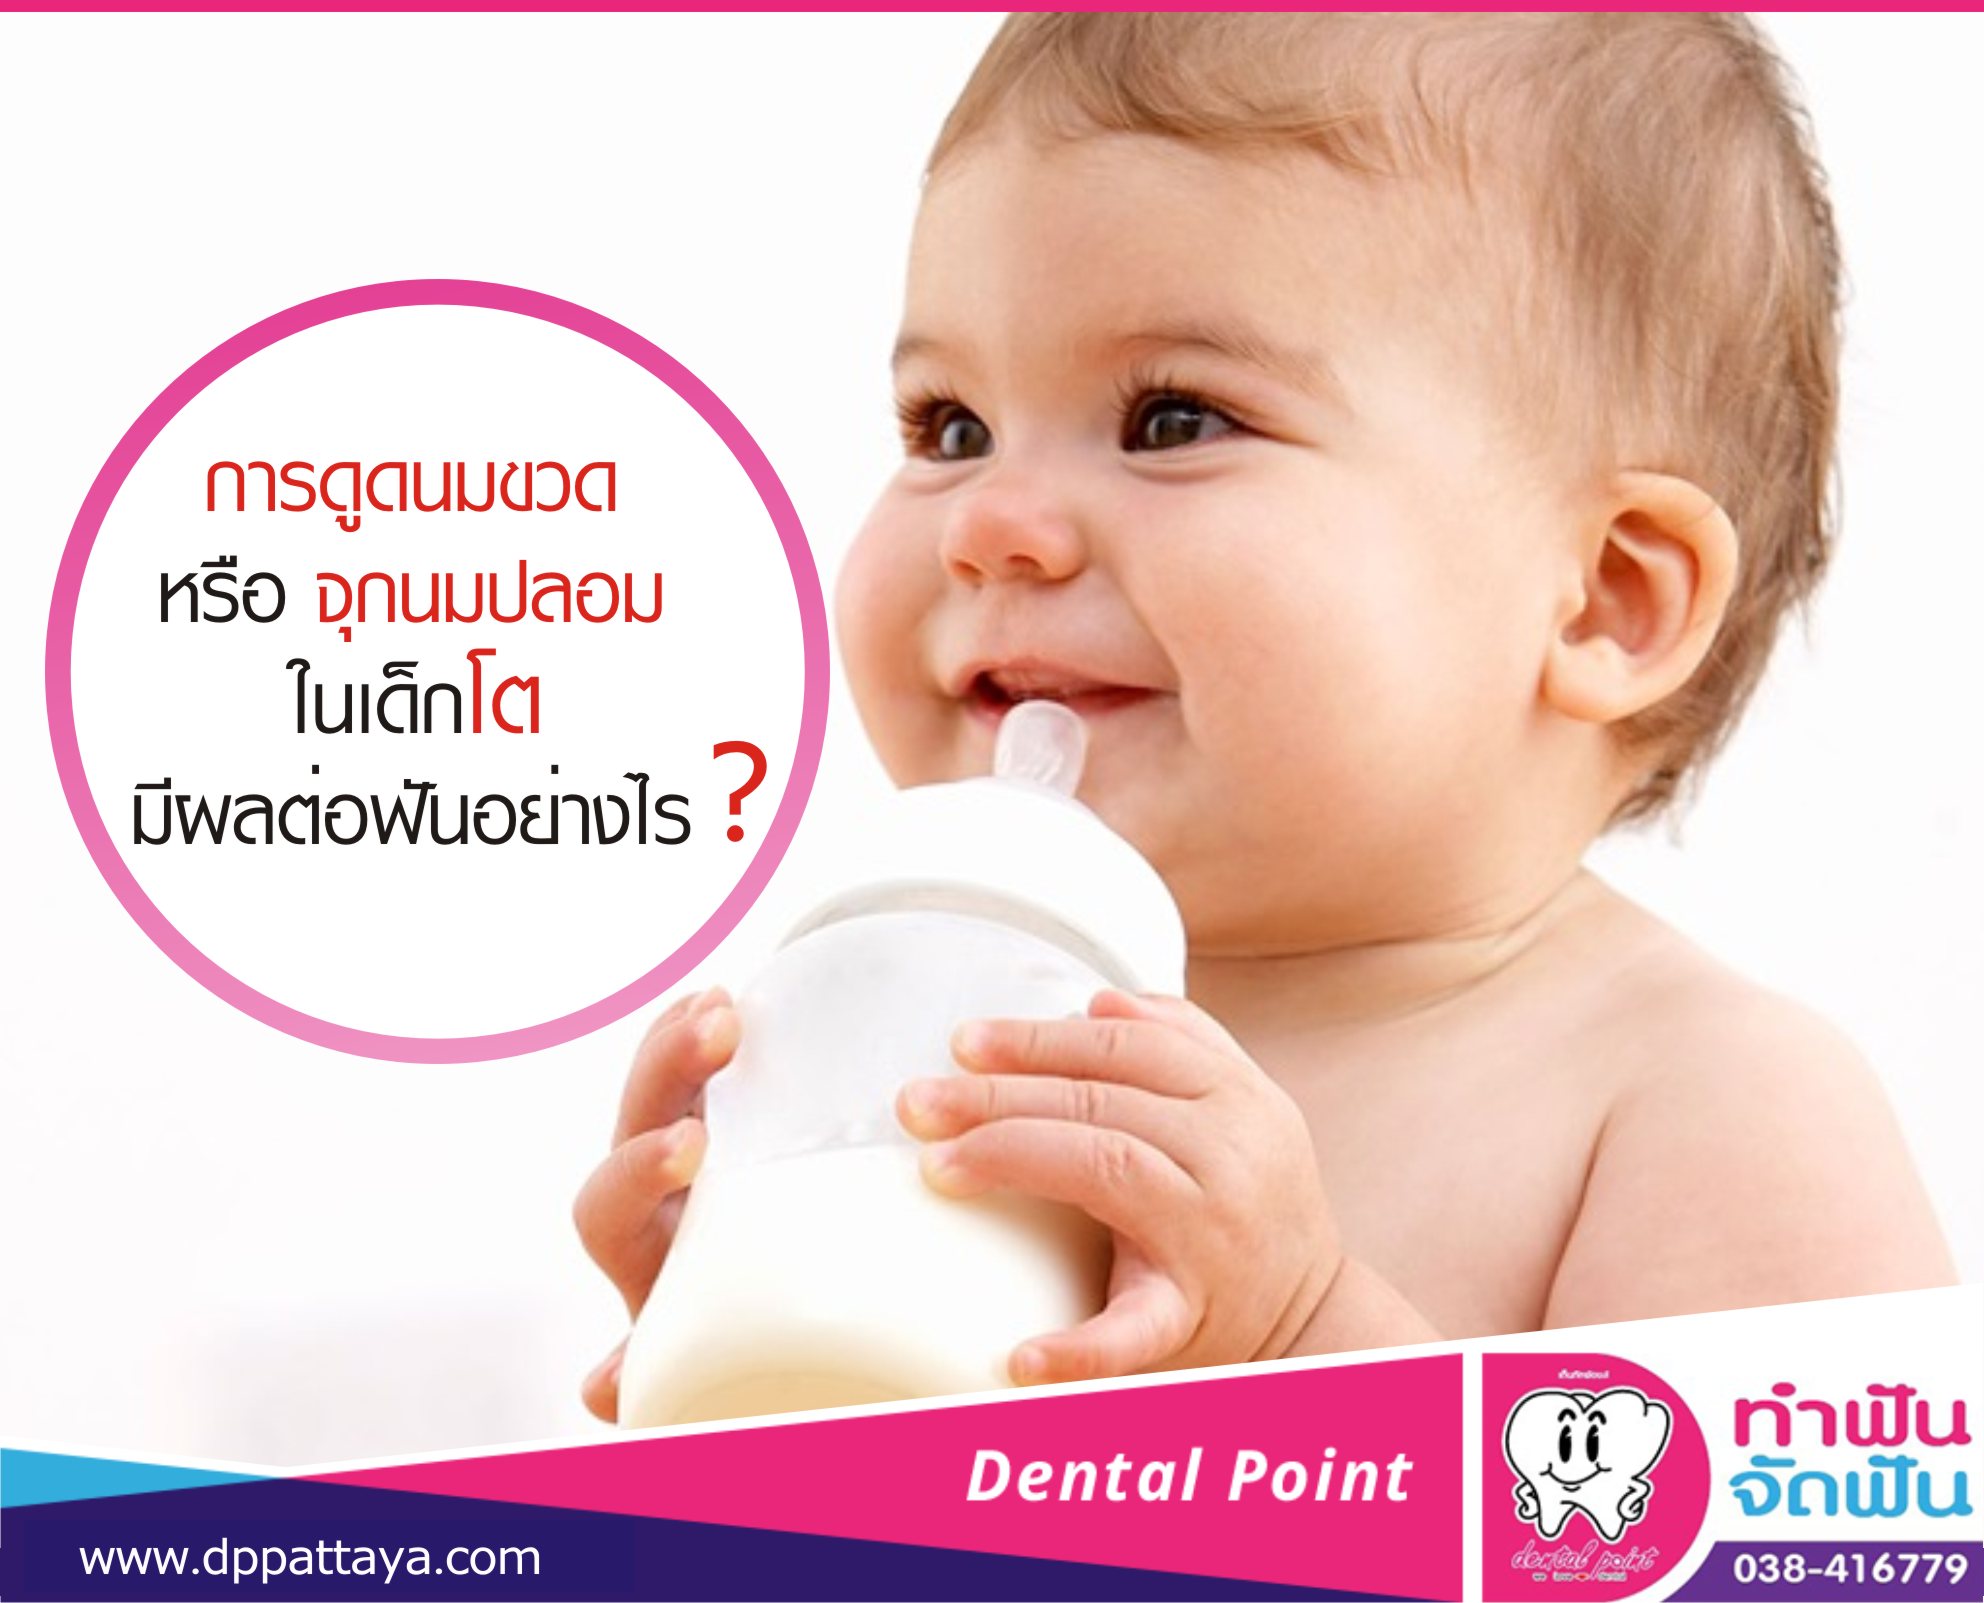 การดูดนมขวดหรือจุกนมปลอมในเด็กโต มีผลต่อฟันอย่างไร